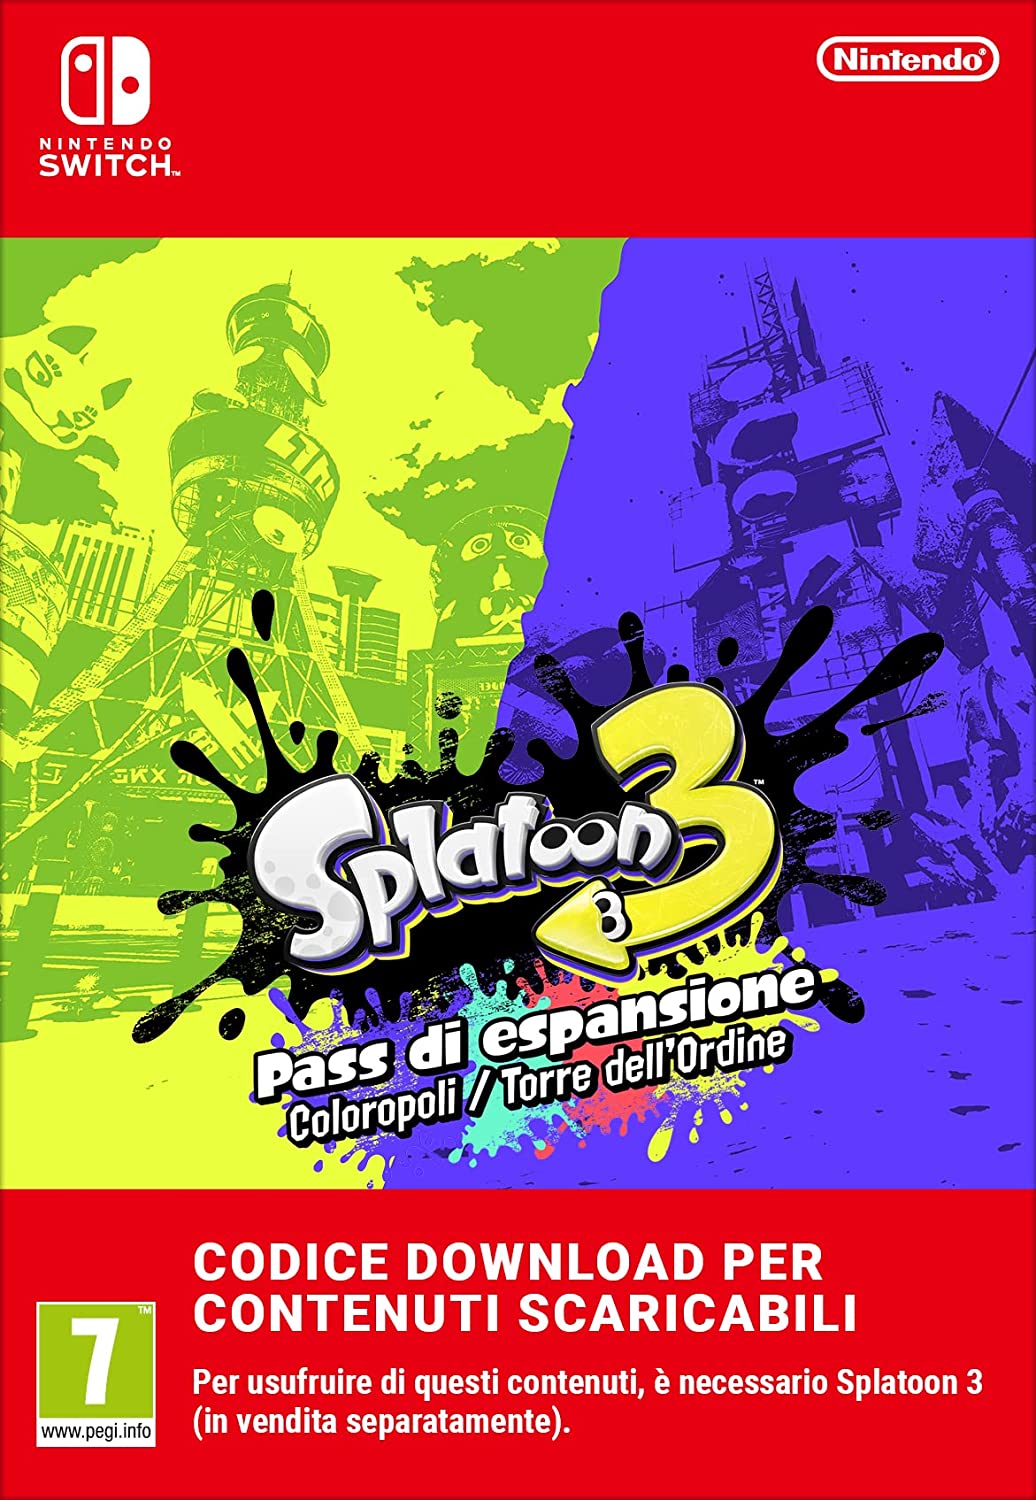 Splatoon 3 - Pass di espansione Coloropoli/Torre dell'Ordine 